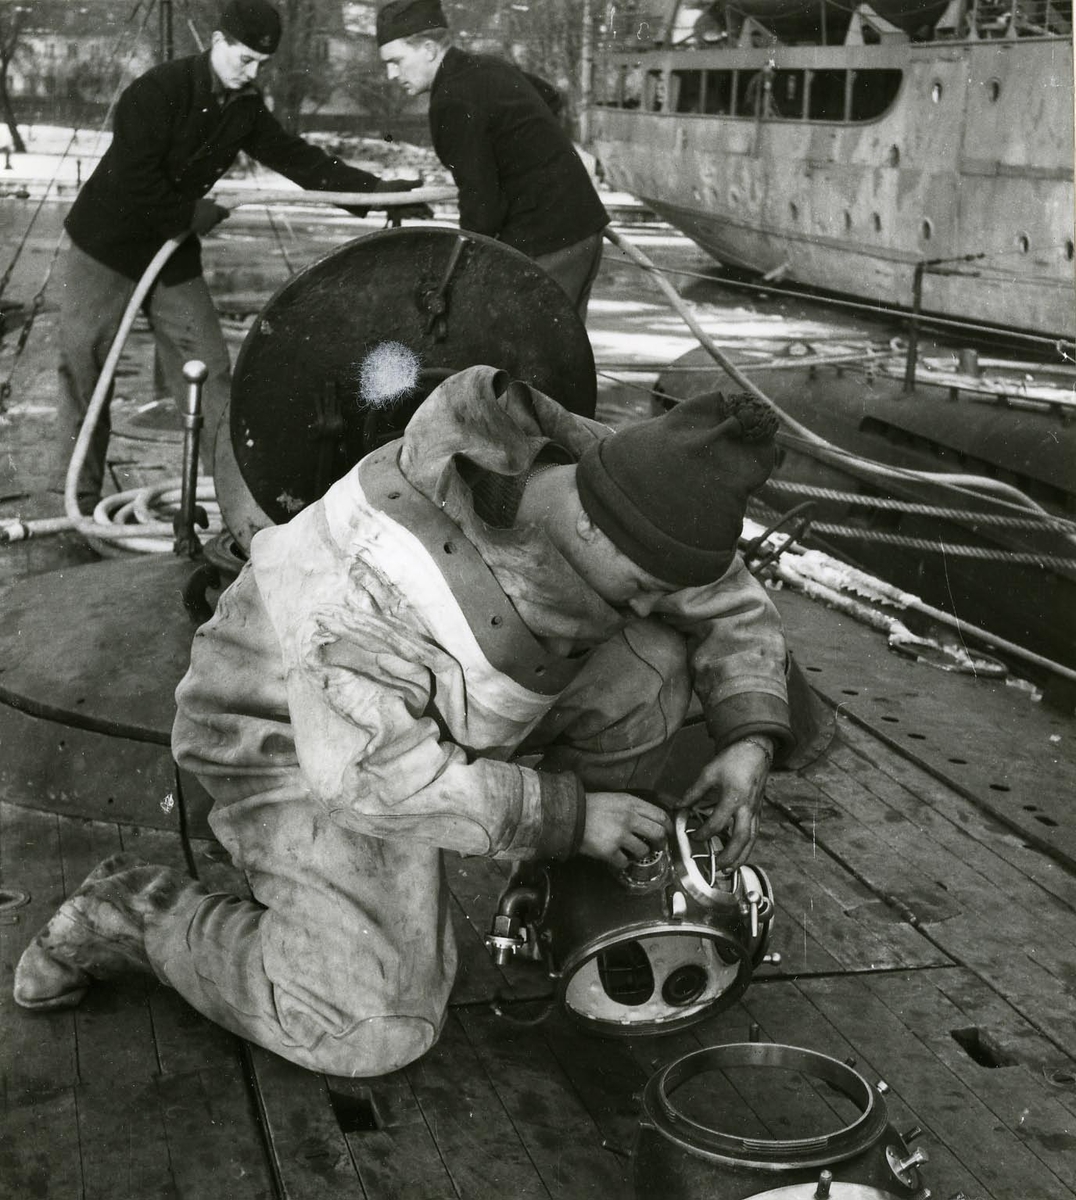 Dykarbete på ubåten Sjöormen 1949.
Tungdykare kollar hjälmen på däck. Fartyget förtöjt vid Skeppsholmen.